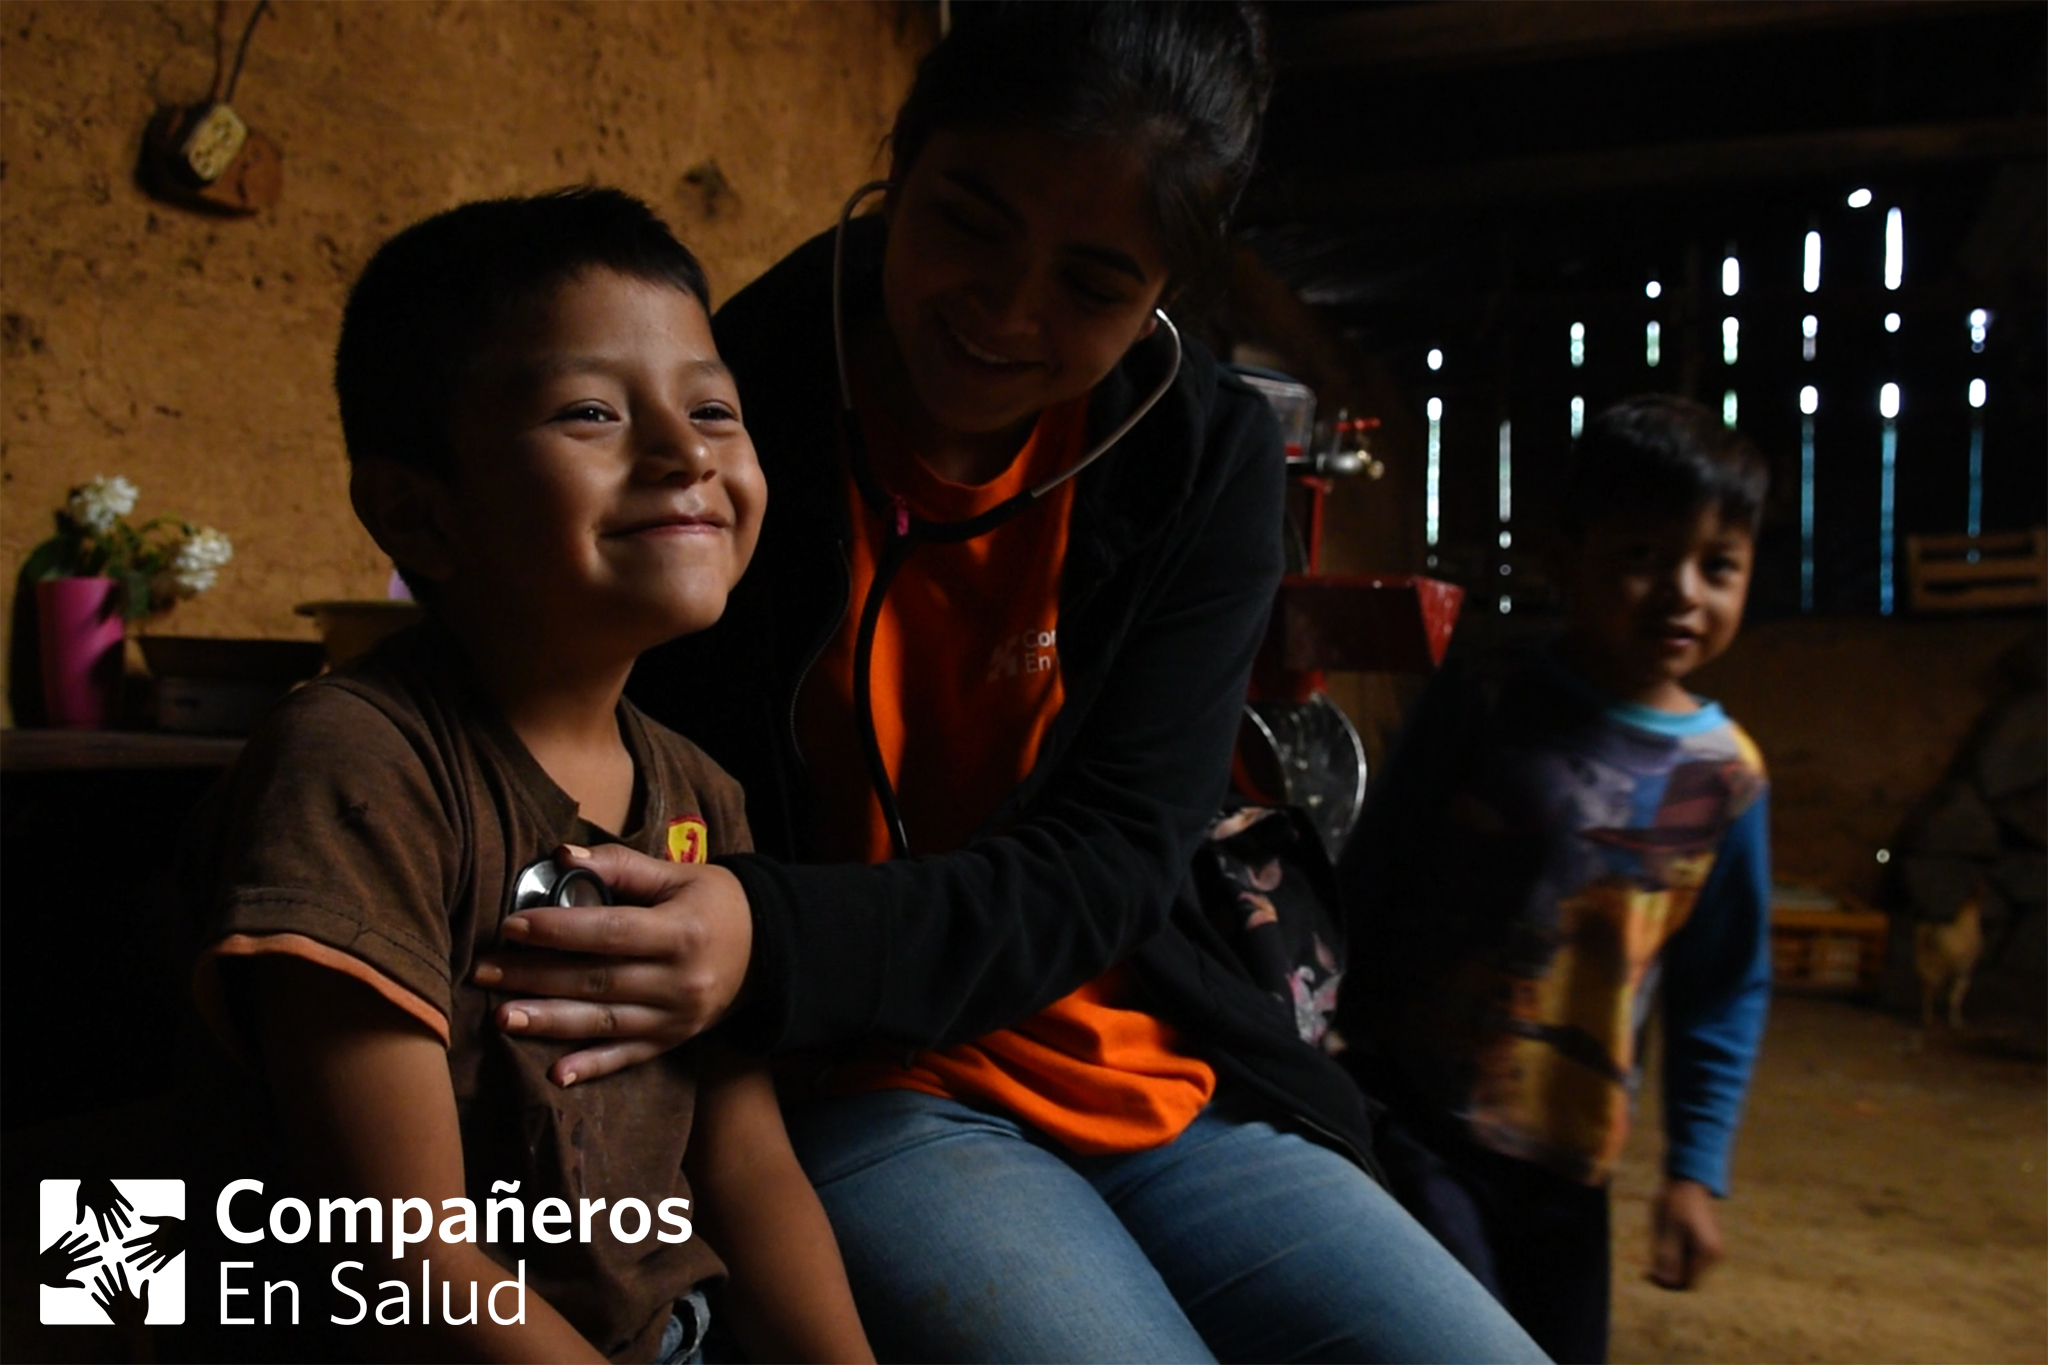  La Dra. Lorena Ponce de León atiende a Julio en su casa en la comunidad de Monterrey, antes de compartir un desayuno preparado por su mamá.   